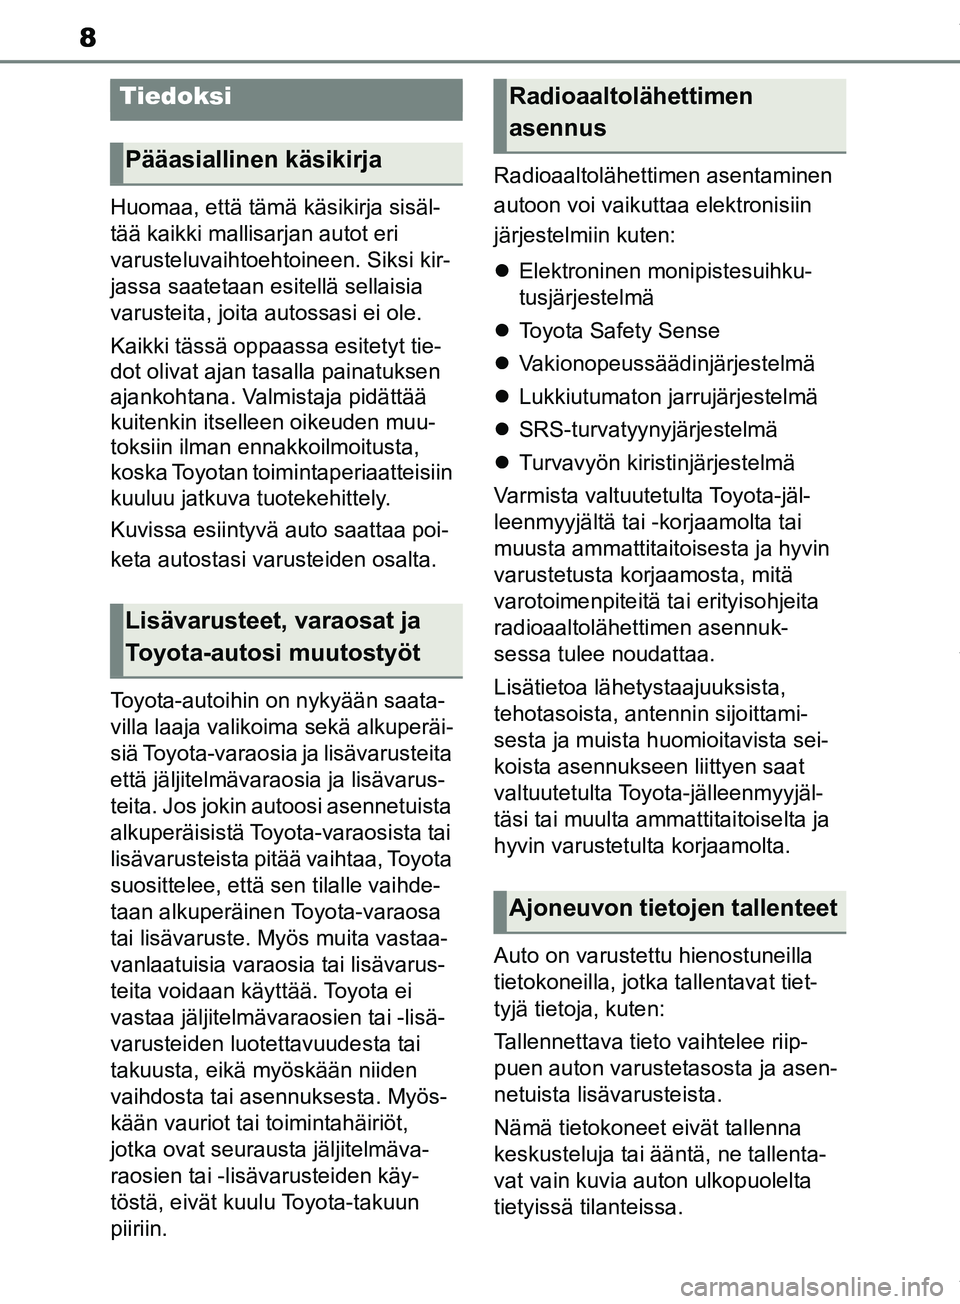 TOYOTA RAV4 2018  Omistajan Käsikirja (in Finnish) 8
Huomaa, että tämä käsikirja sisäl-
tää kaikki mallisarjan autot eri 
varusteluvaihtoehtoineen. Siksi kir-
jassa saatetaan esitellä sellaisia 
varusteita, joita autossasi ei ole.
Kaikki täss